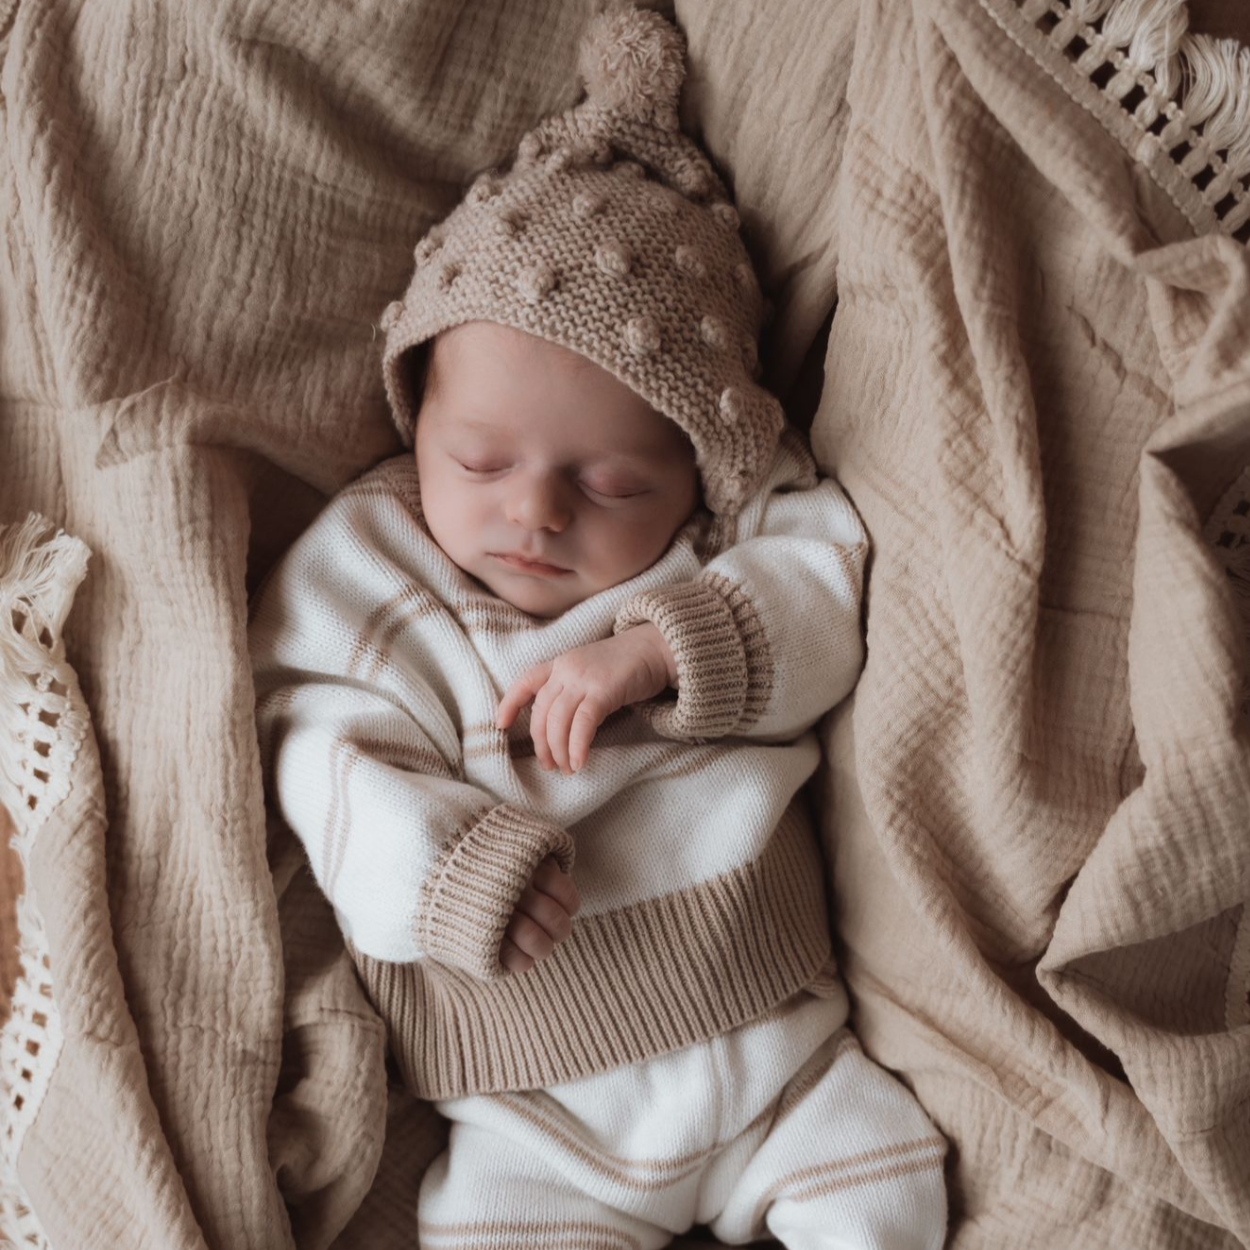 Een vrolijke baby met donker haar ligt op een witte deken met kanttextuur, draagt een knusse Yumi Baby-handdoekset voor 0-6 maanden en straalt met een brede, vrolijke glimlach.